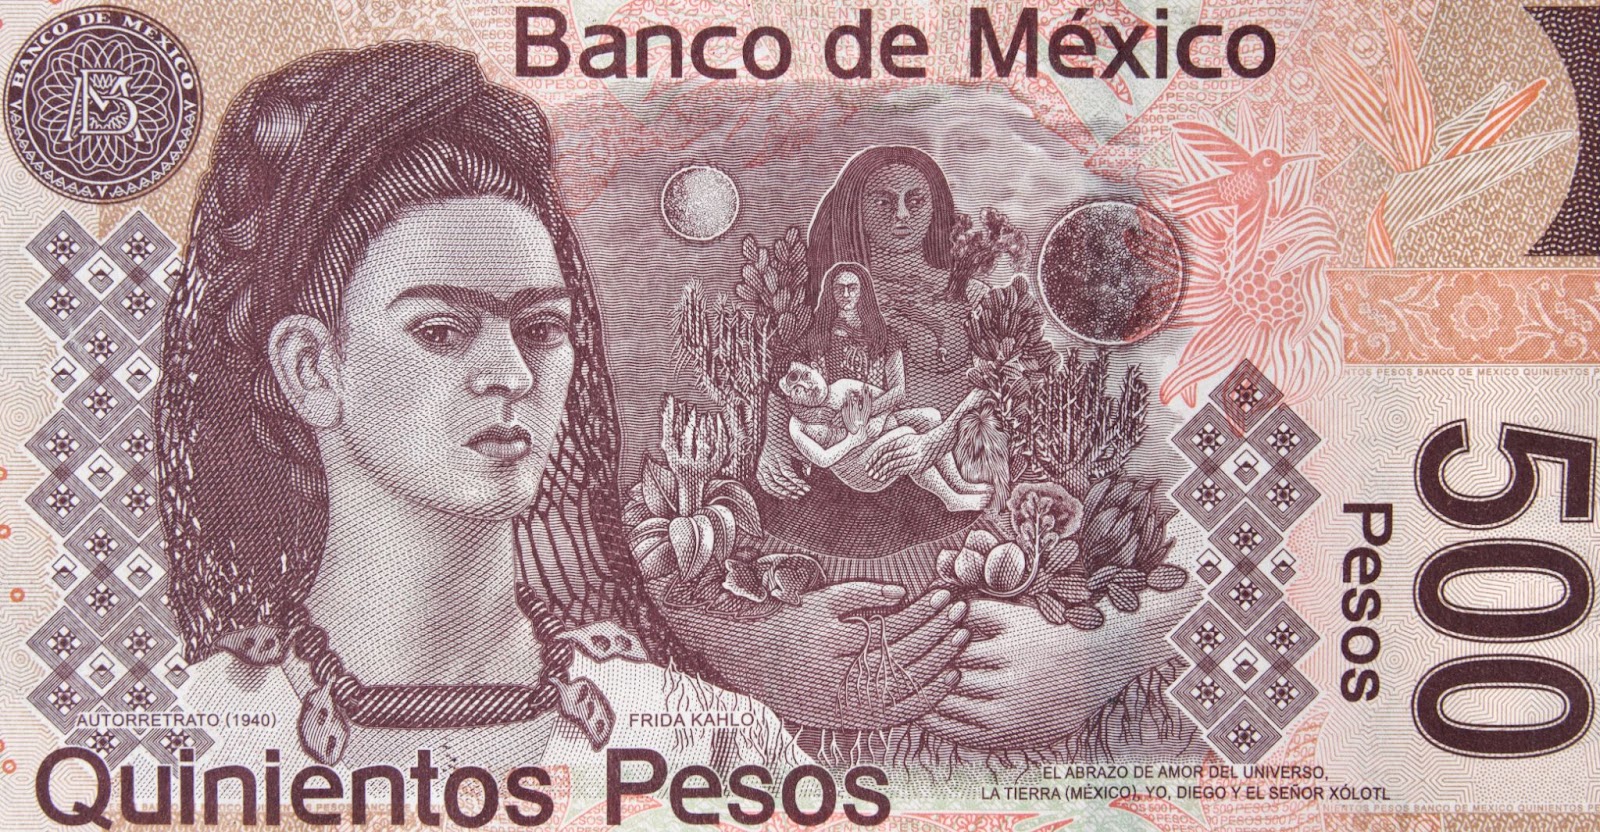 meksykańska artystka Frida Kahlo